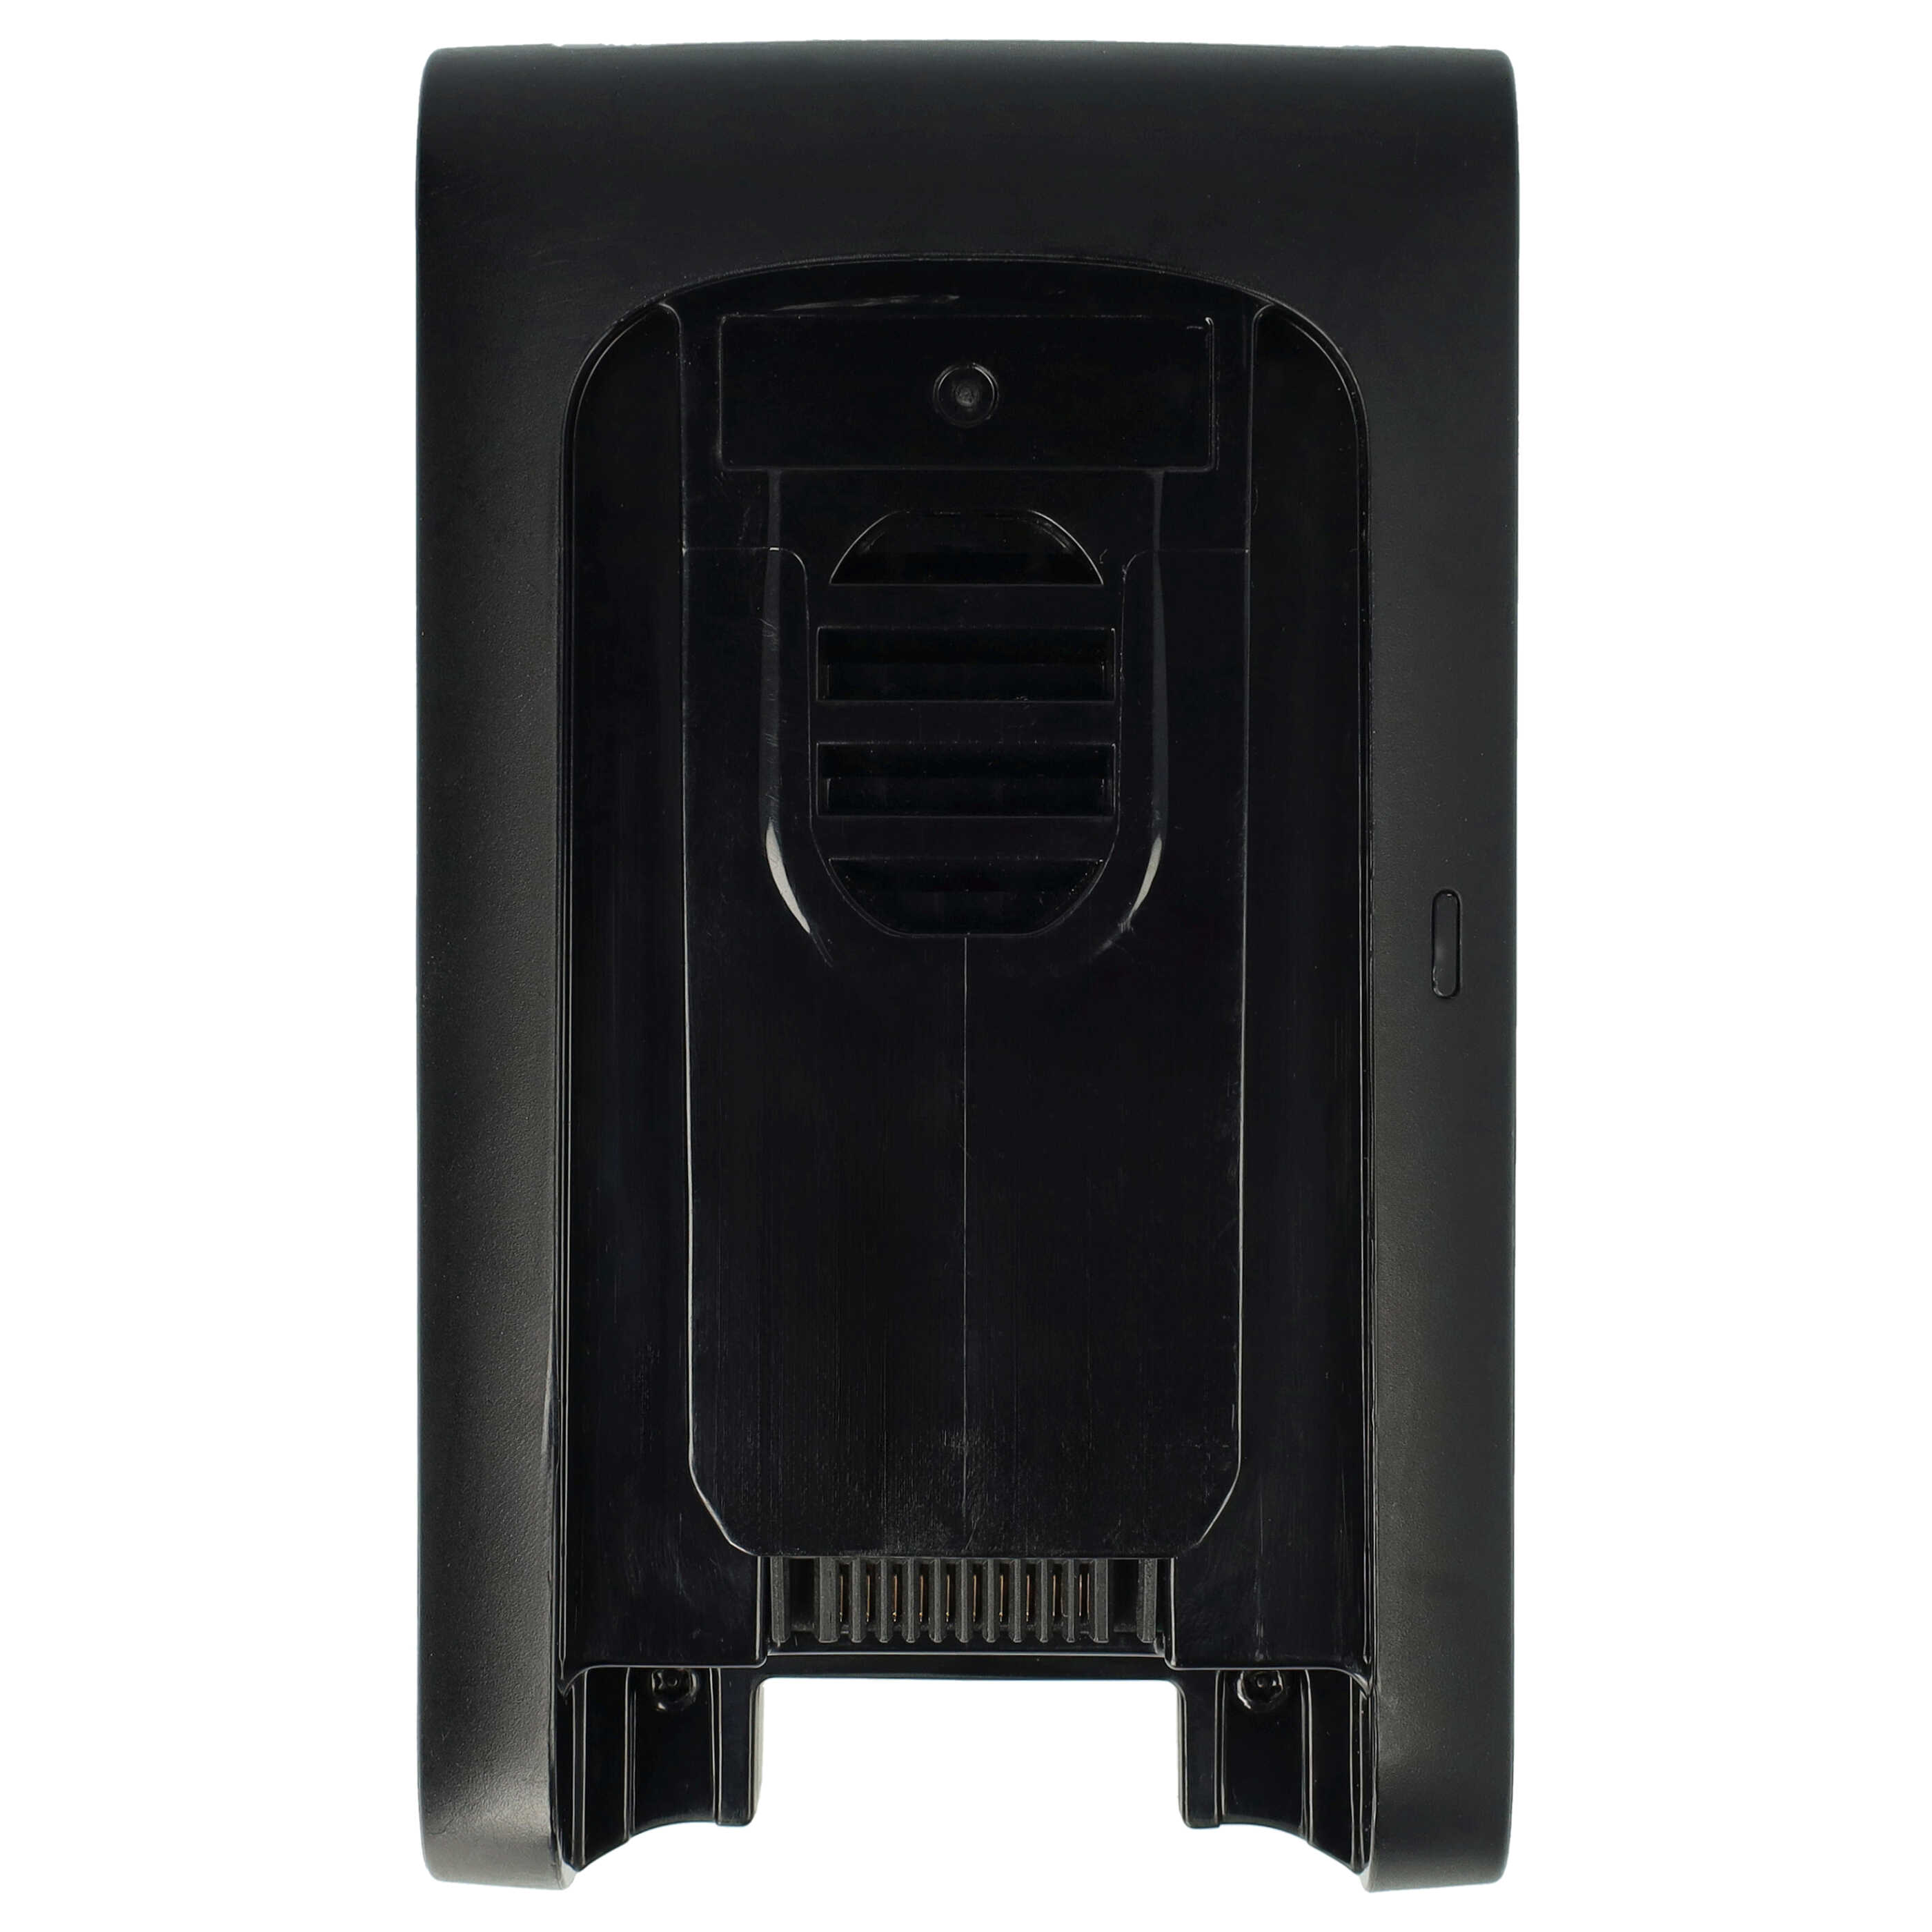 Akku passend für Tineco S15 Essentials, Pet, Pro - 2500mAh 22,2V Li-Ion, schwarz